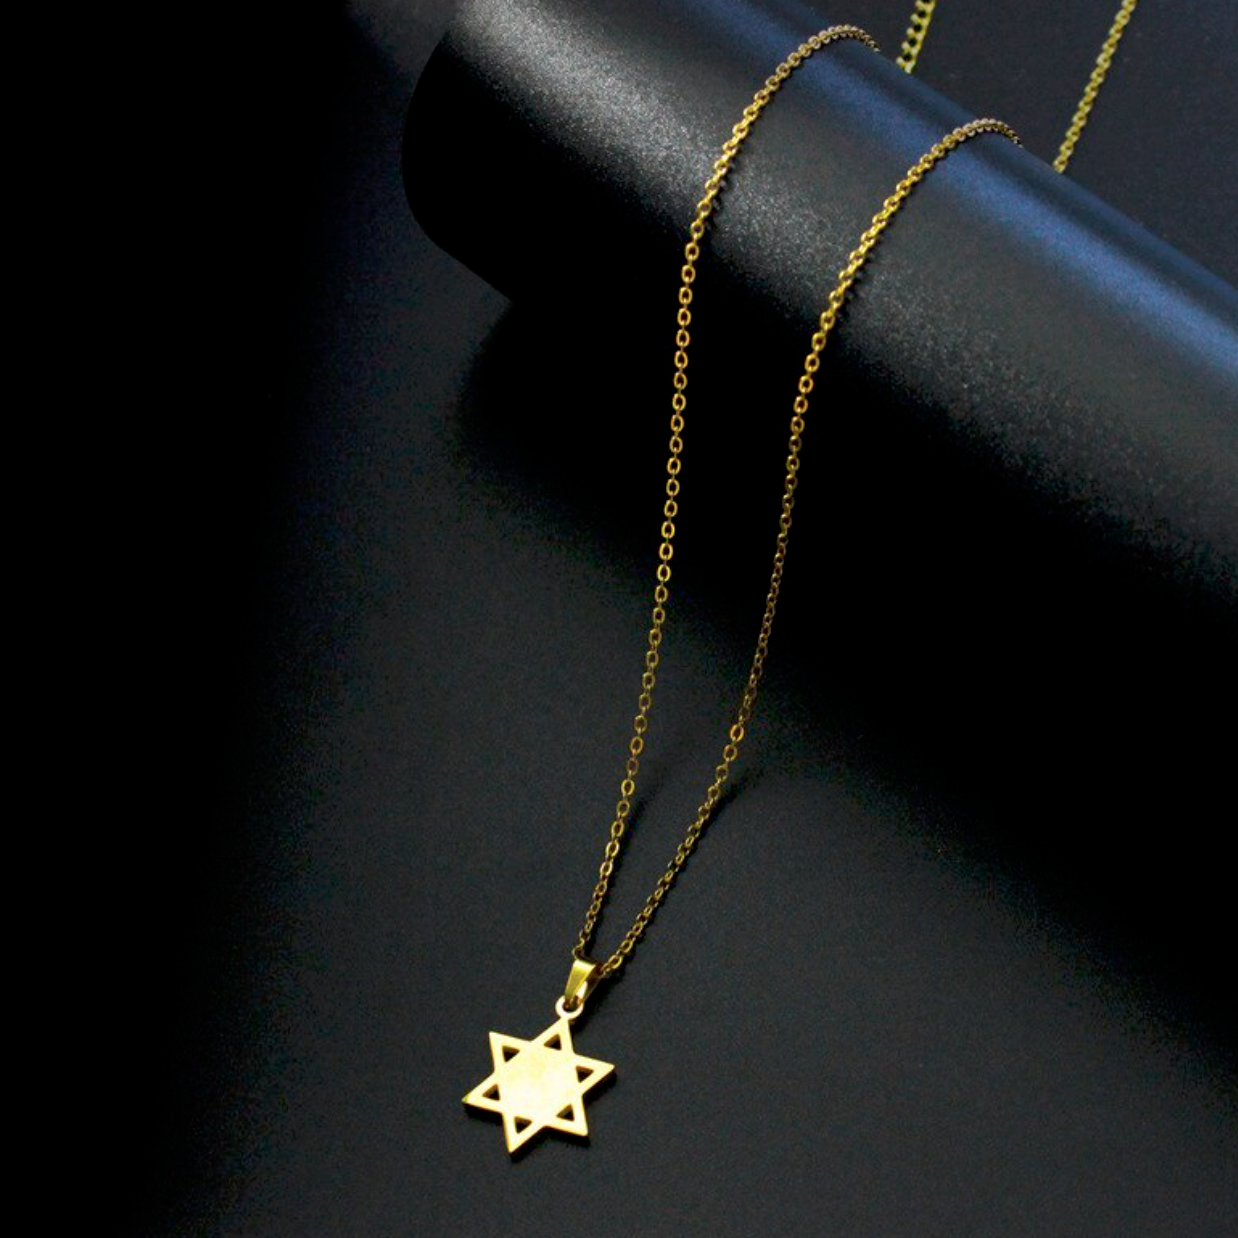 Collier acier doré pendentif étoile de david dorée. Détails produit : Couleur or. Acier doré. Pendentif doré étoile de David doré.